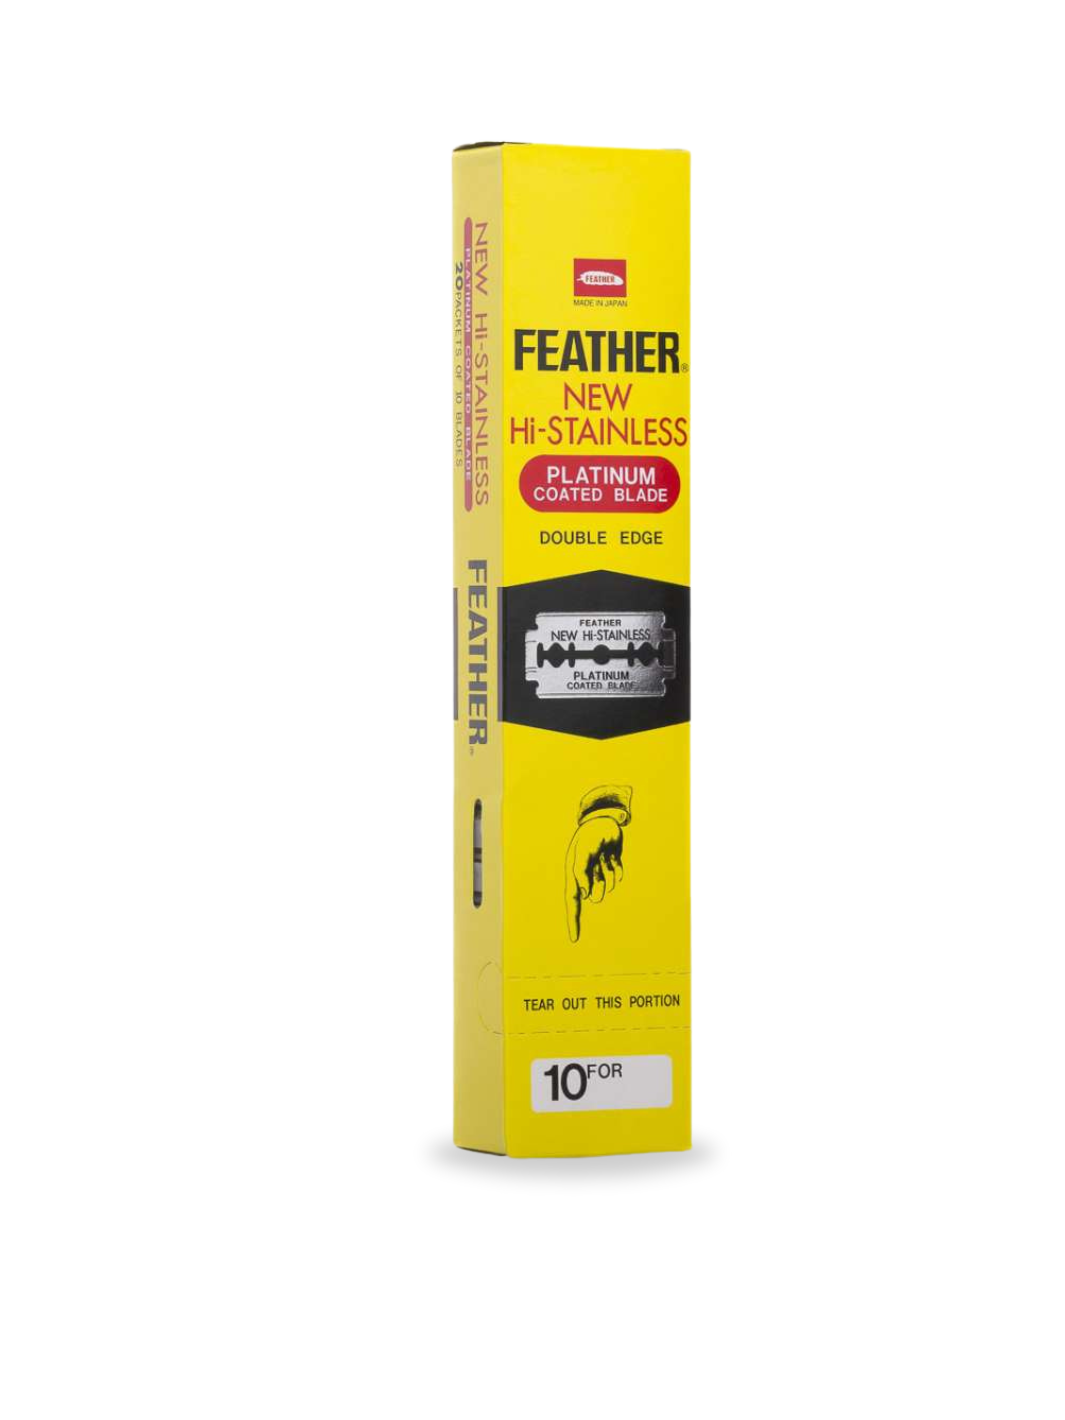 Feather Hi-Stainless Double Edge Rasierklingen in einer 200er Packung, präzise und langlebige Klingen für Barber, verfügbar bei Phullcutz.